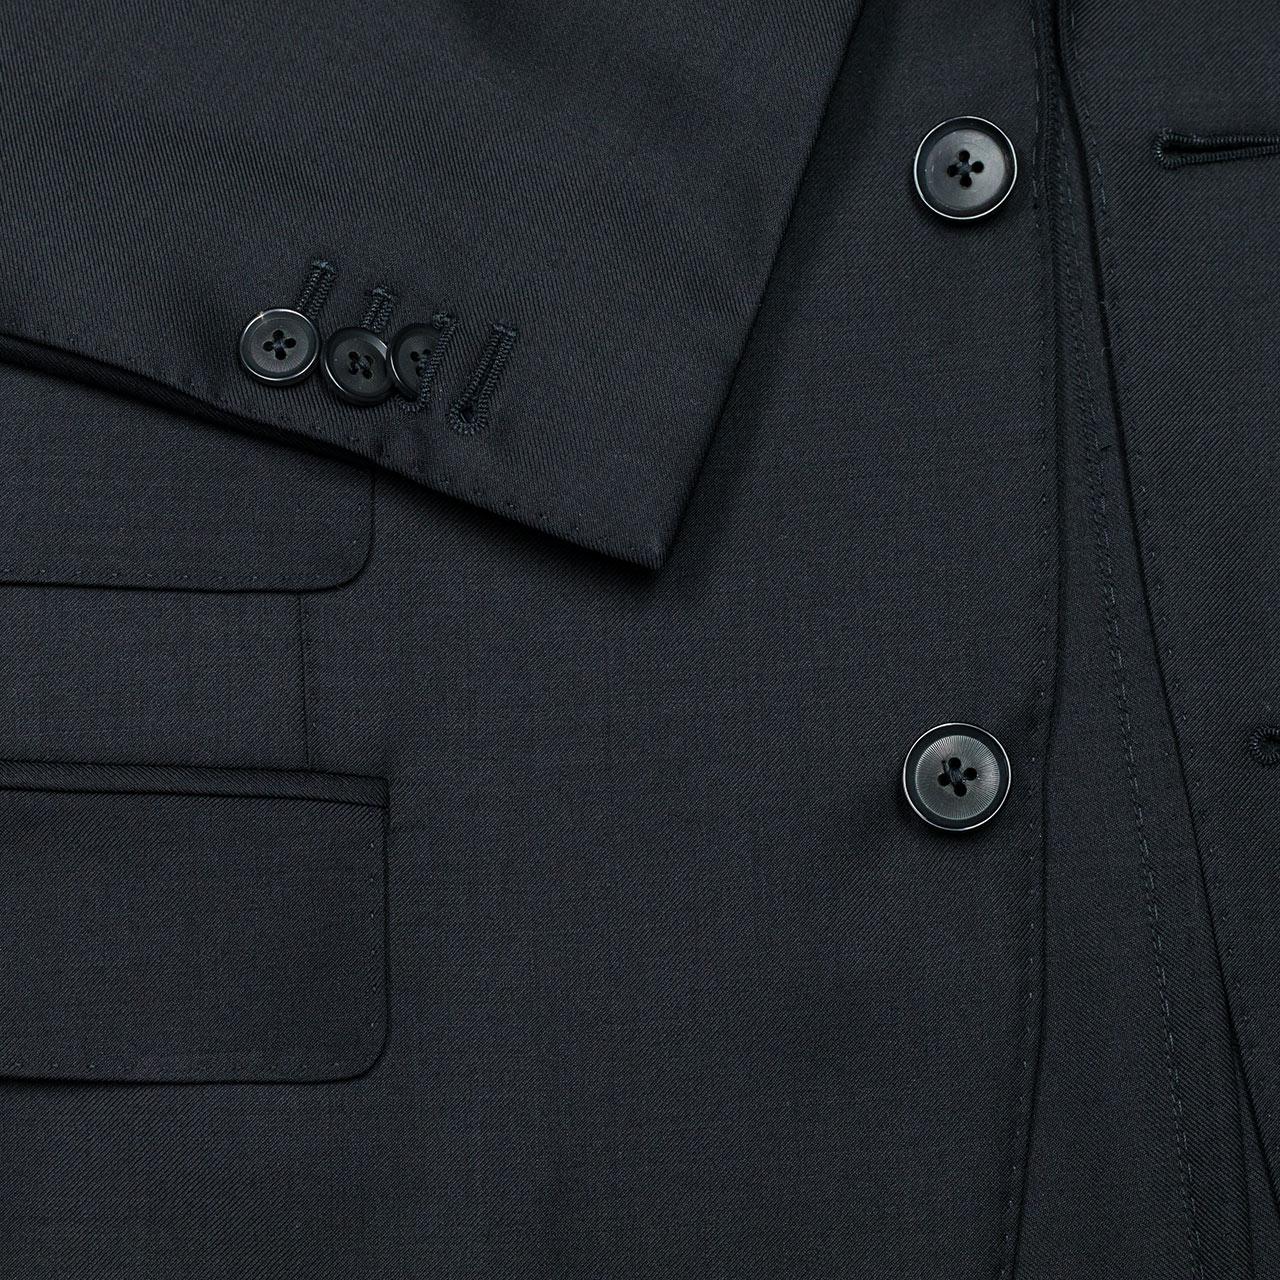 Caruso Anzug in schwarz aus Super 130'S Wolle